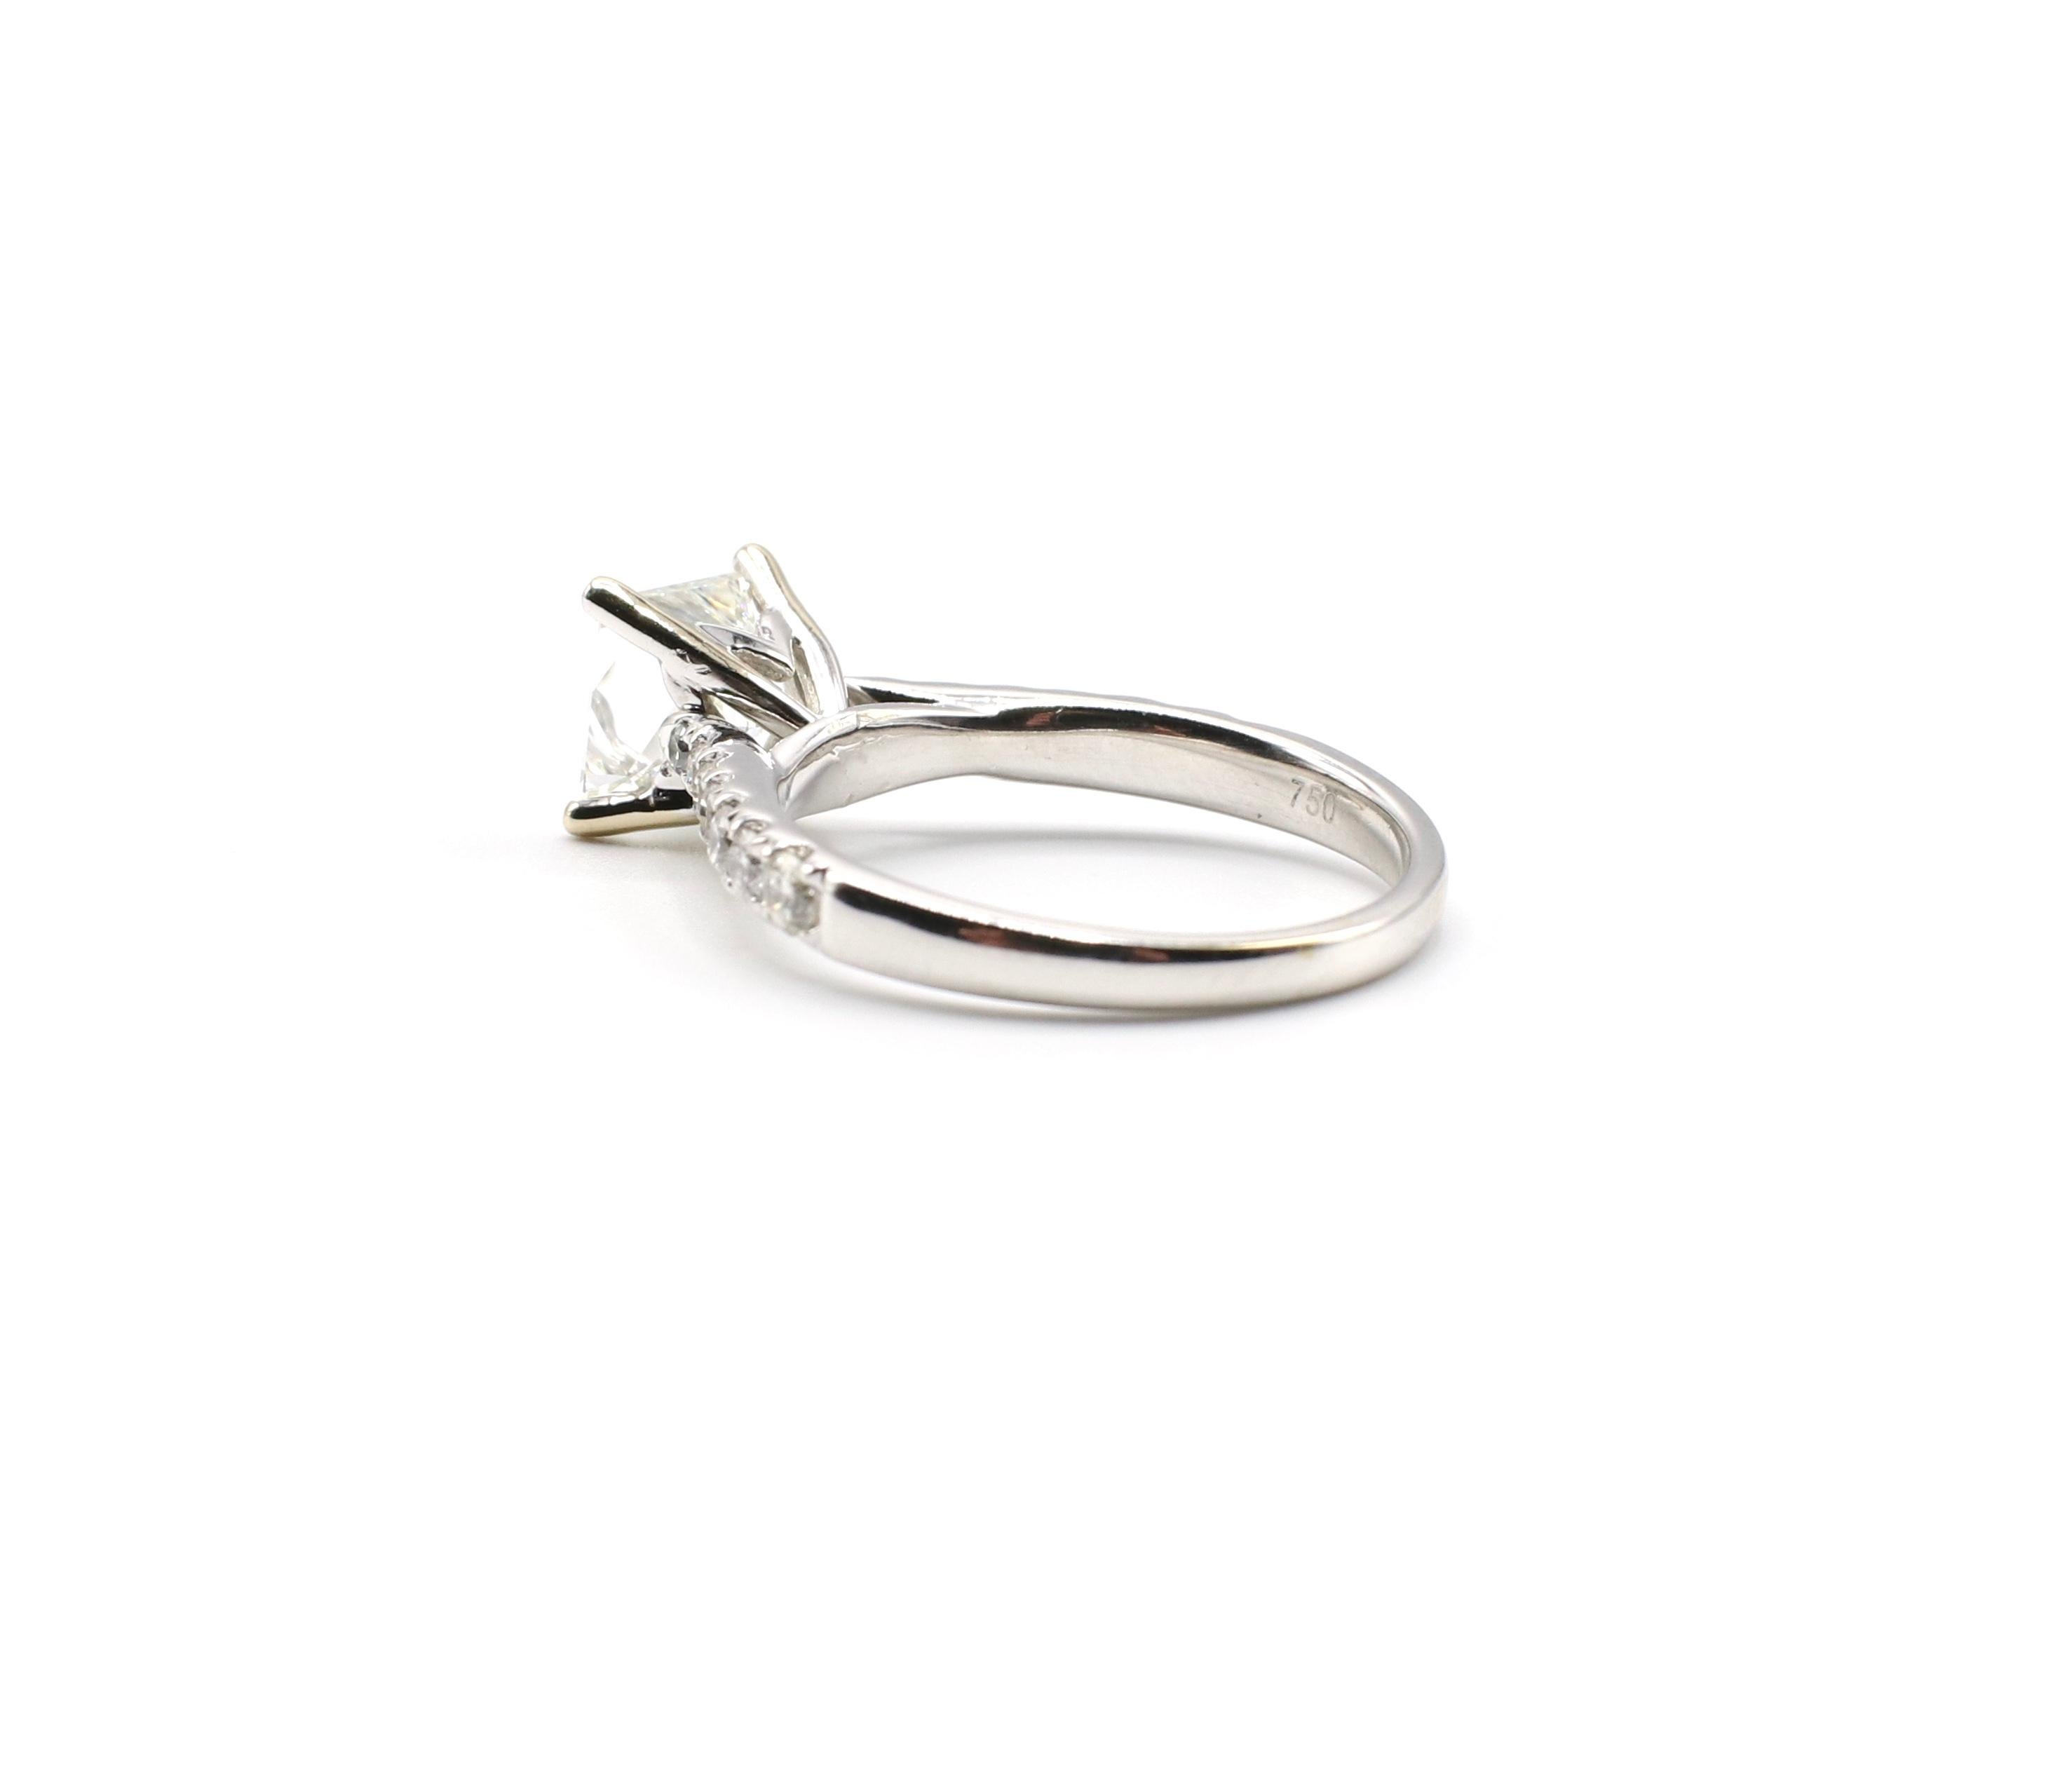 IGI Certified 1.48 Carat I VS1 Princess Cut 18 Karat White Gold Diamond Ring 3